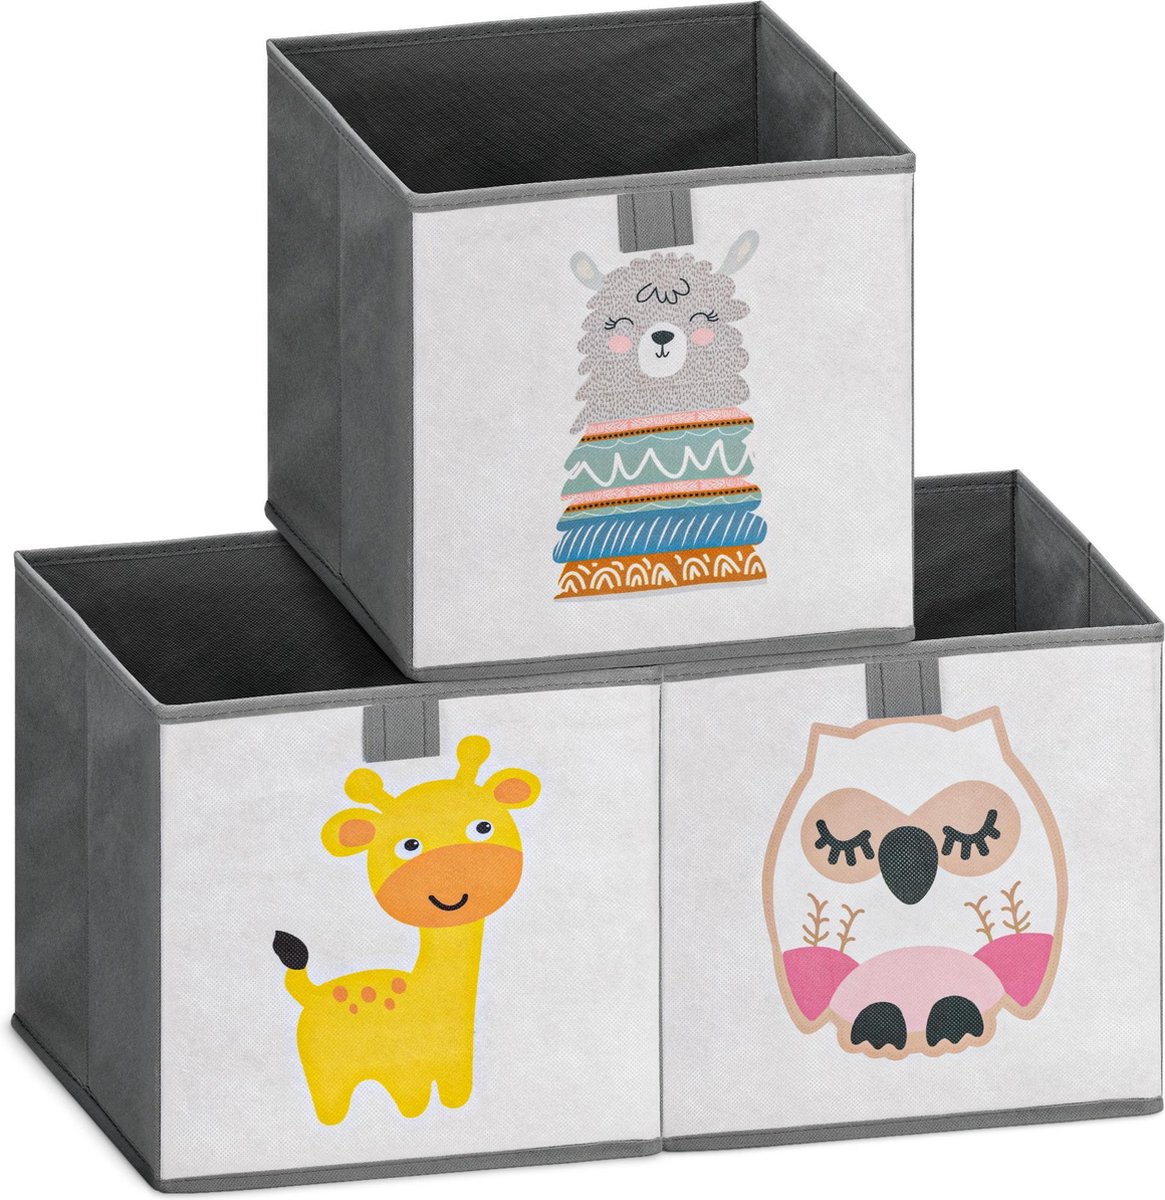 Navaris Lot 3x Boîte de Rangement 3x Bac Pliable 28 x 28 x 28 cm pour Stockage Jouets Vêtements Fournitures et Accessoires pour Bébé Enfant 